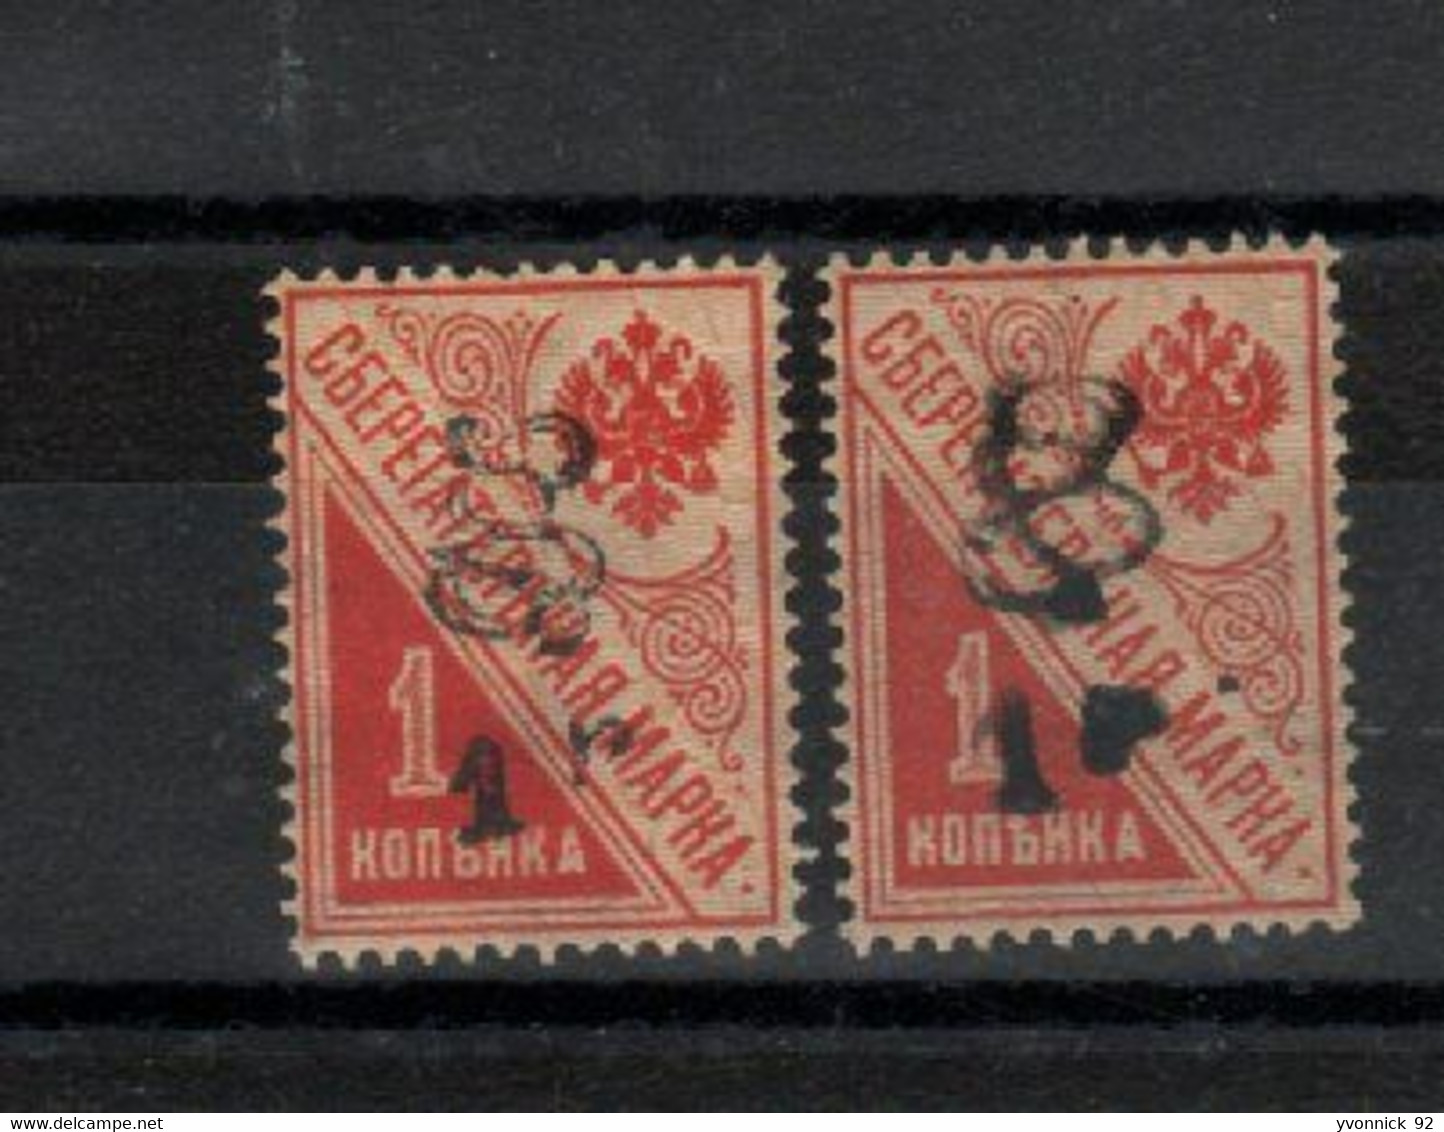 Arménie _2 Timbres De Russie Caisse épargne ( 1920 ) N°77 - Armenien